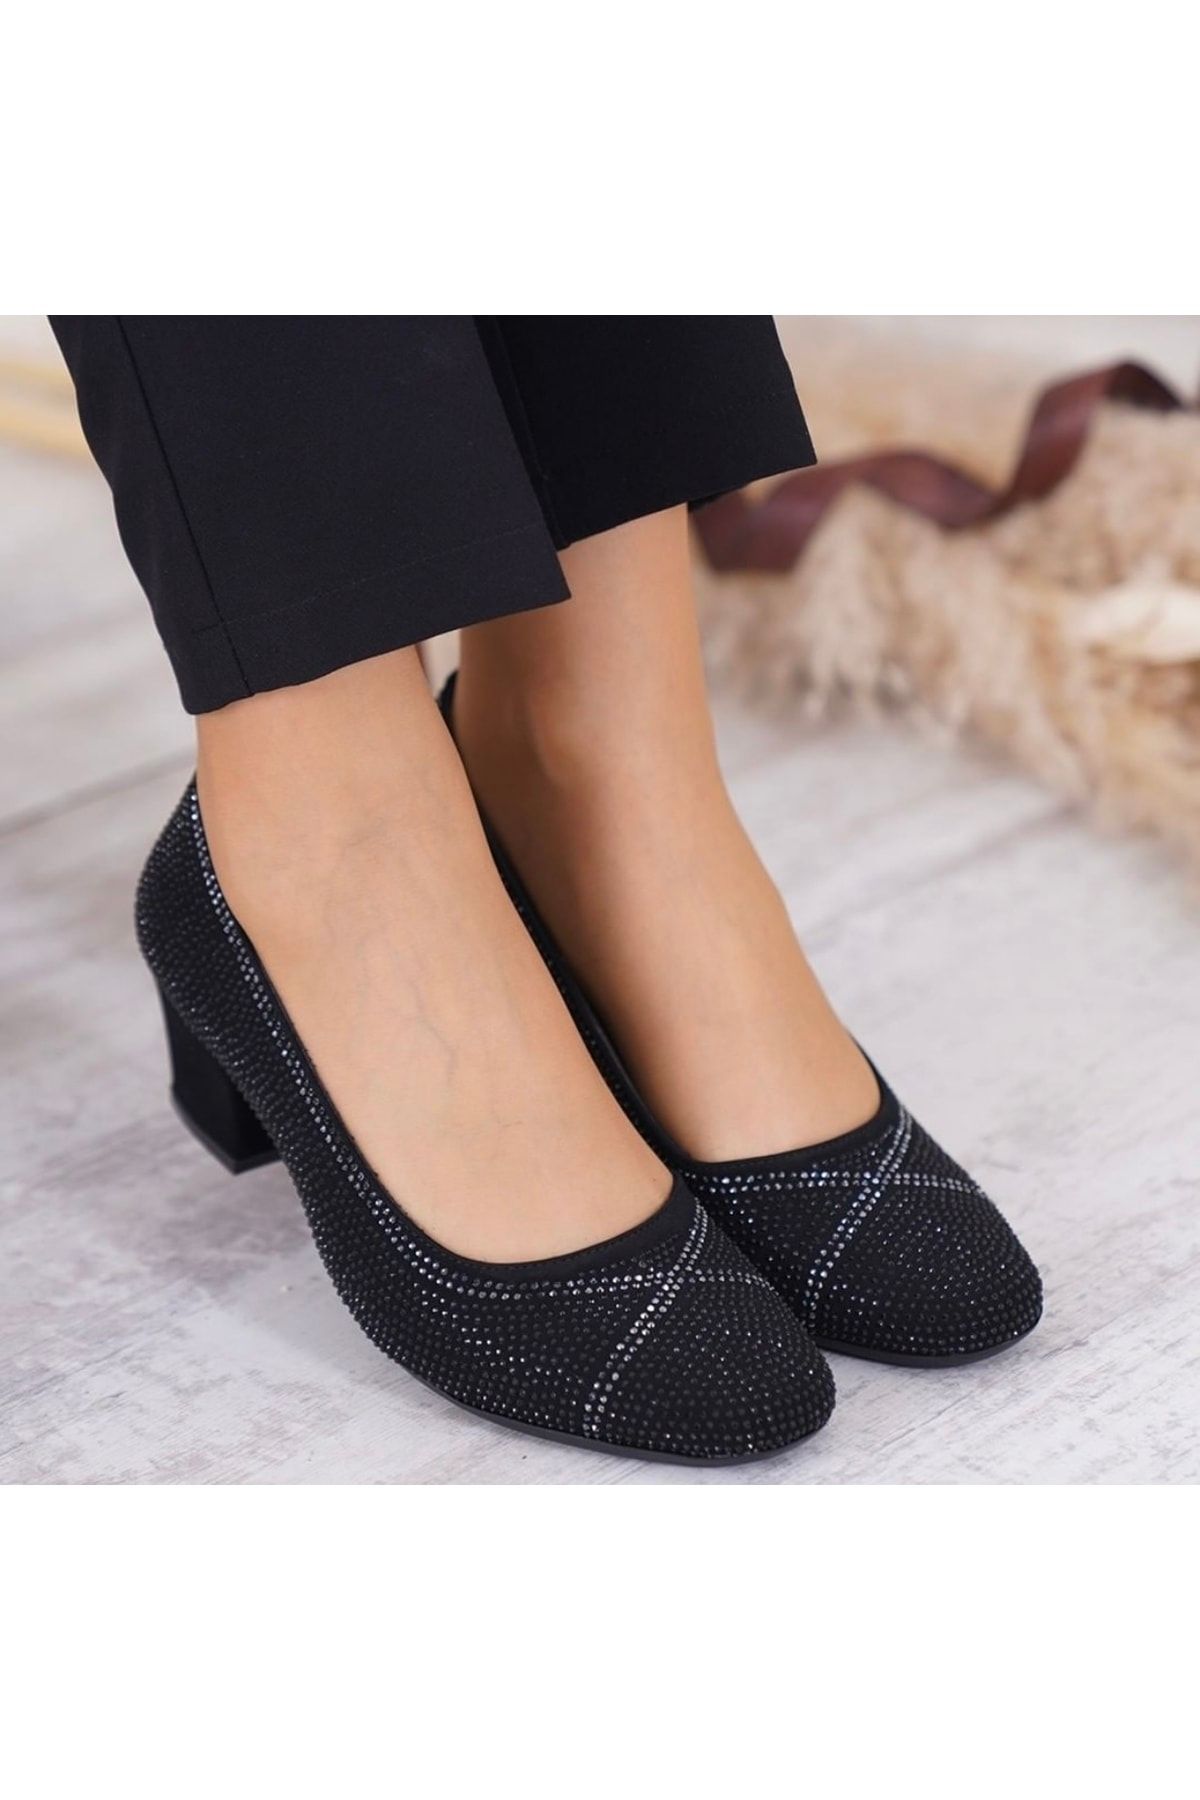 Anıl Ayakkabı Nr 8679 Kadın Siyah Taşlı Küt Geniş Taş Işlemeli Detay Kalın Topuklu Kadın Ayakkabı 5cm